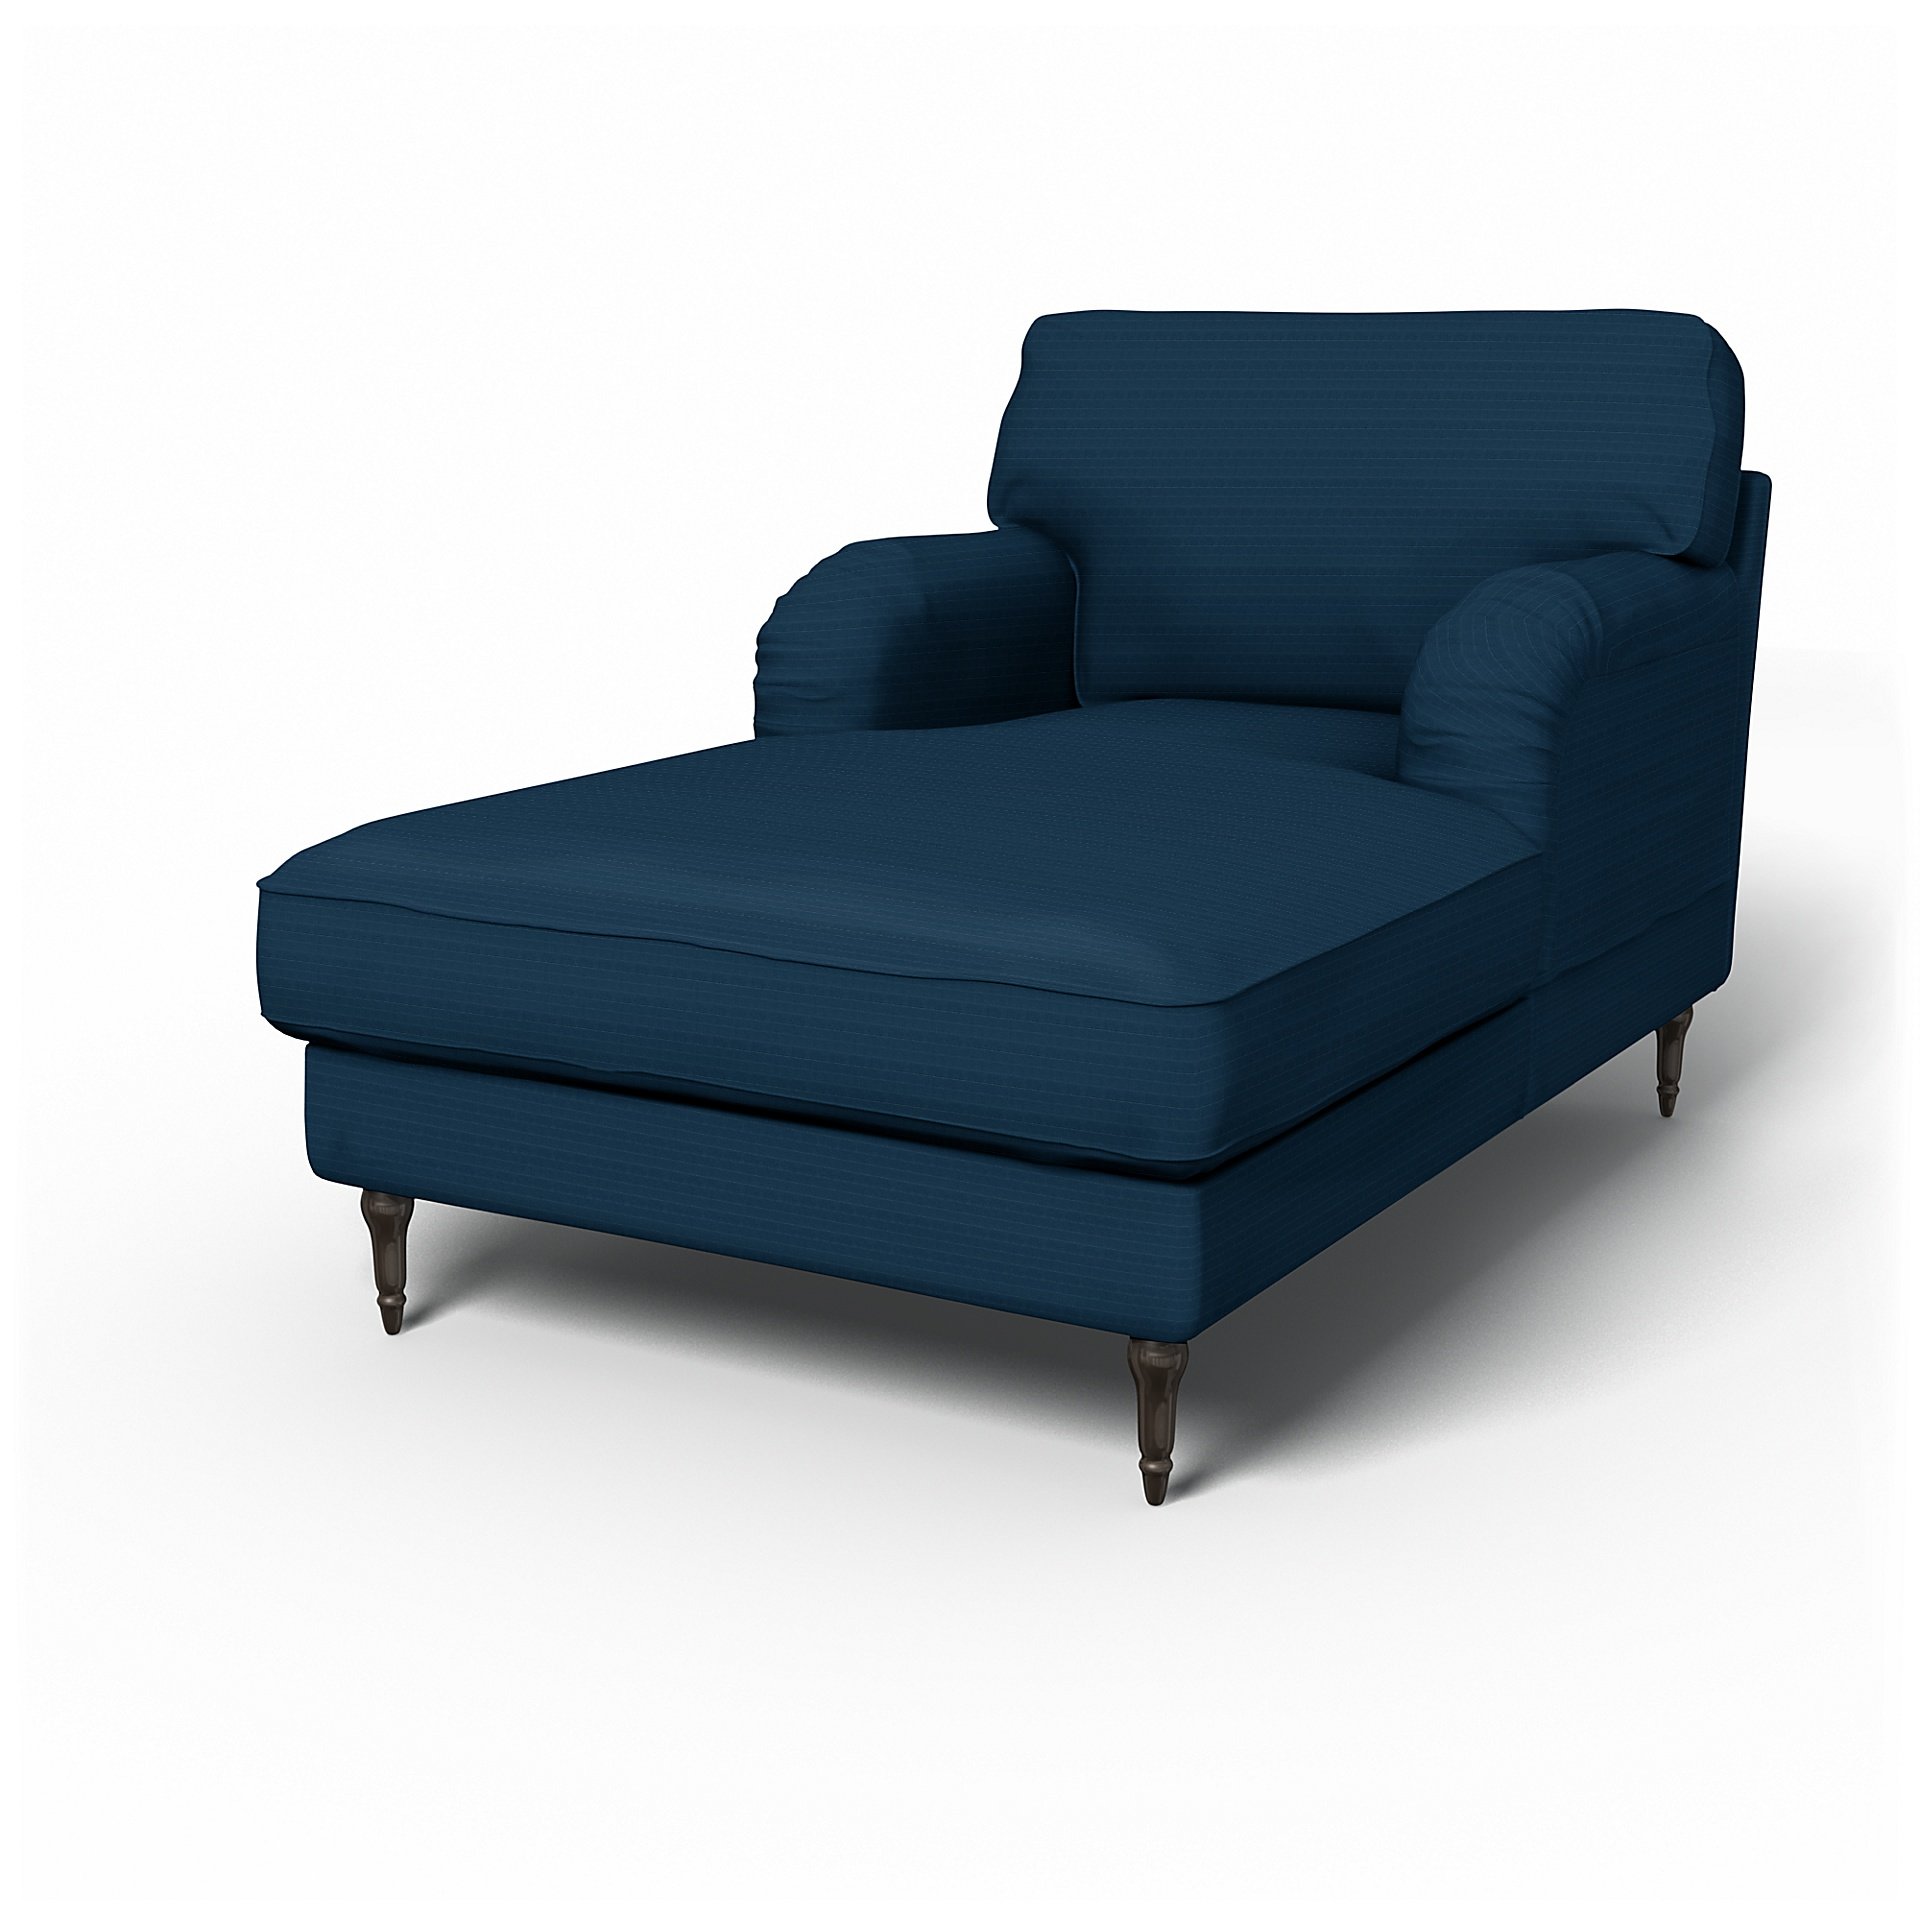 IKEA - Stocksund Chaise Longue Cover, Denim Blue, Velvet - Bemz